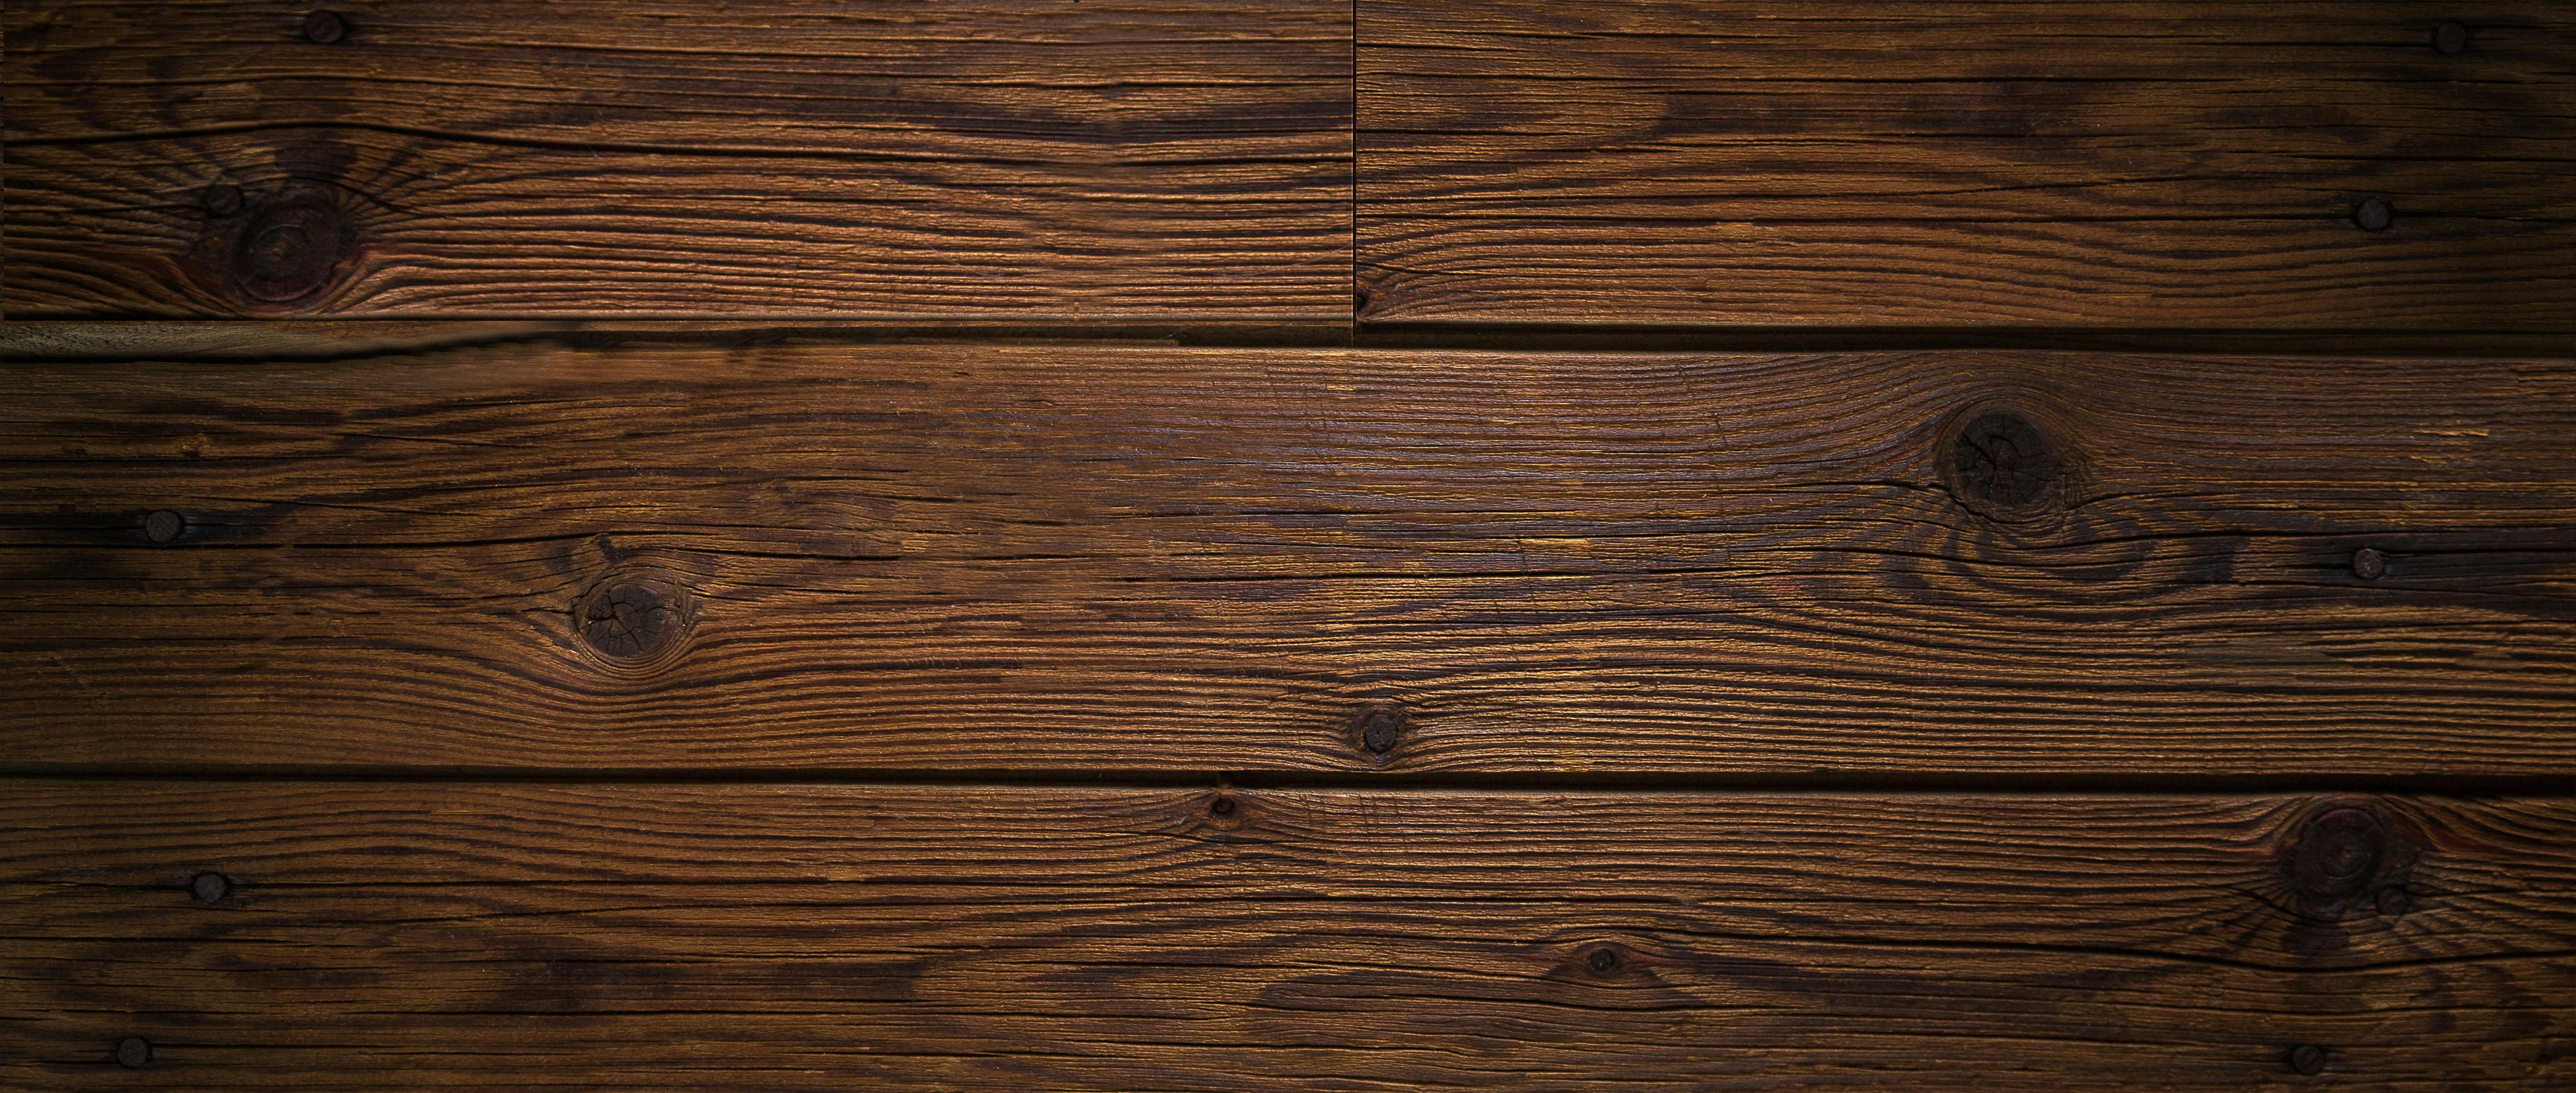 Hình ảnh vân gỗ vô cùng sống động và chân thật, mang đến cho bạn cảm giác như đang sờ tận đồ gỗ thật. Tải xuống kho ảnh vân gỗ miễn phí tốt nhất để có sự trải nghiệm đầy thú vị, và tạo nên những thiết kế đẹp mắt và chuyên nghiệp của riêng bạn.